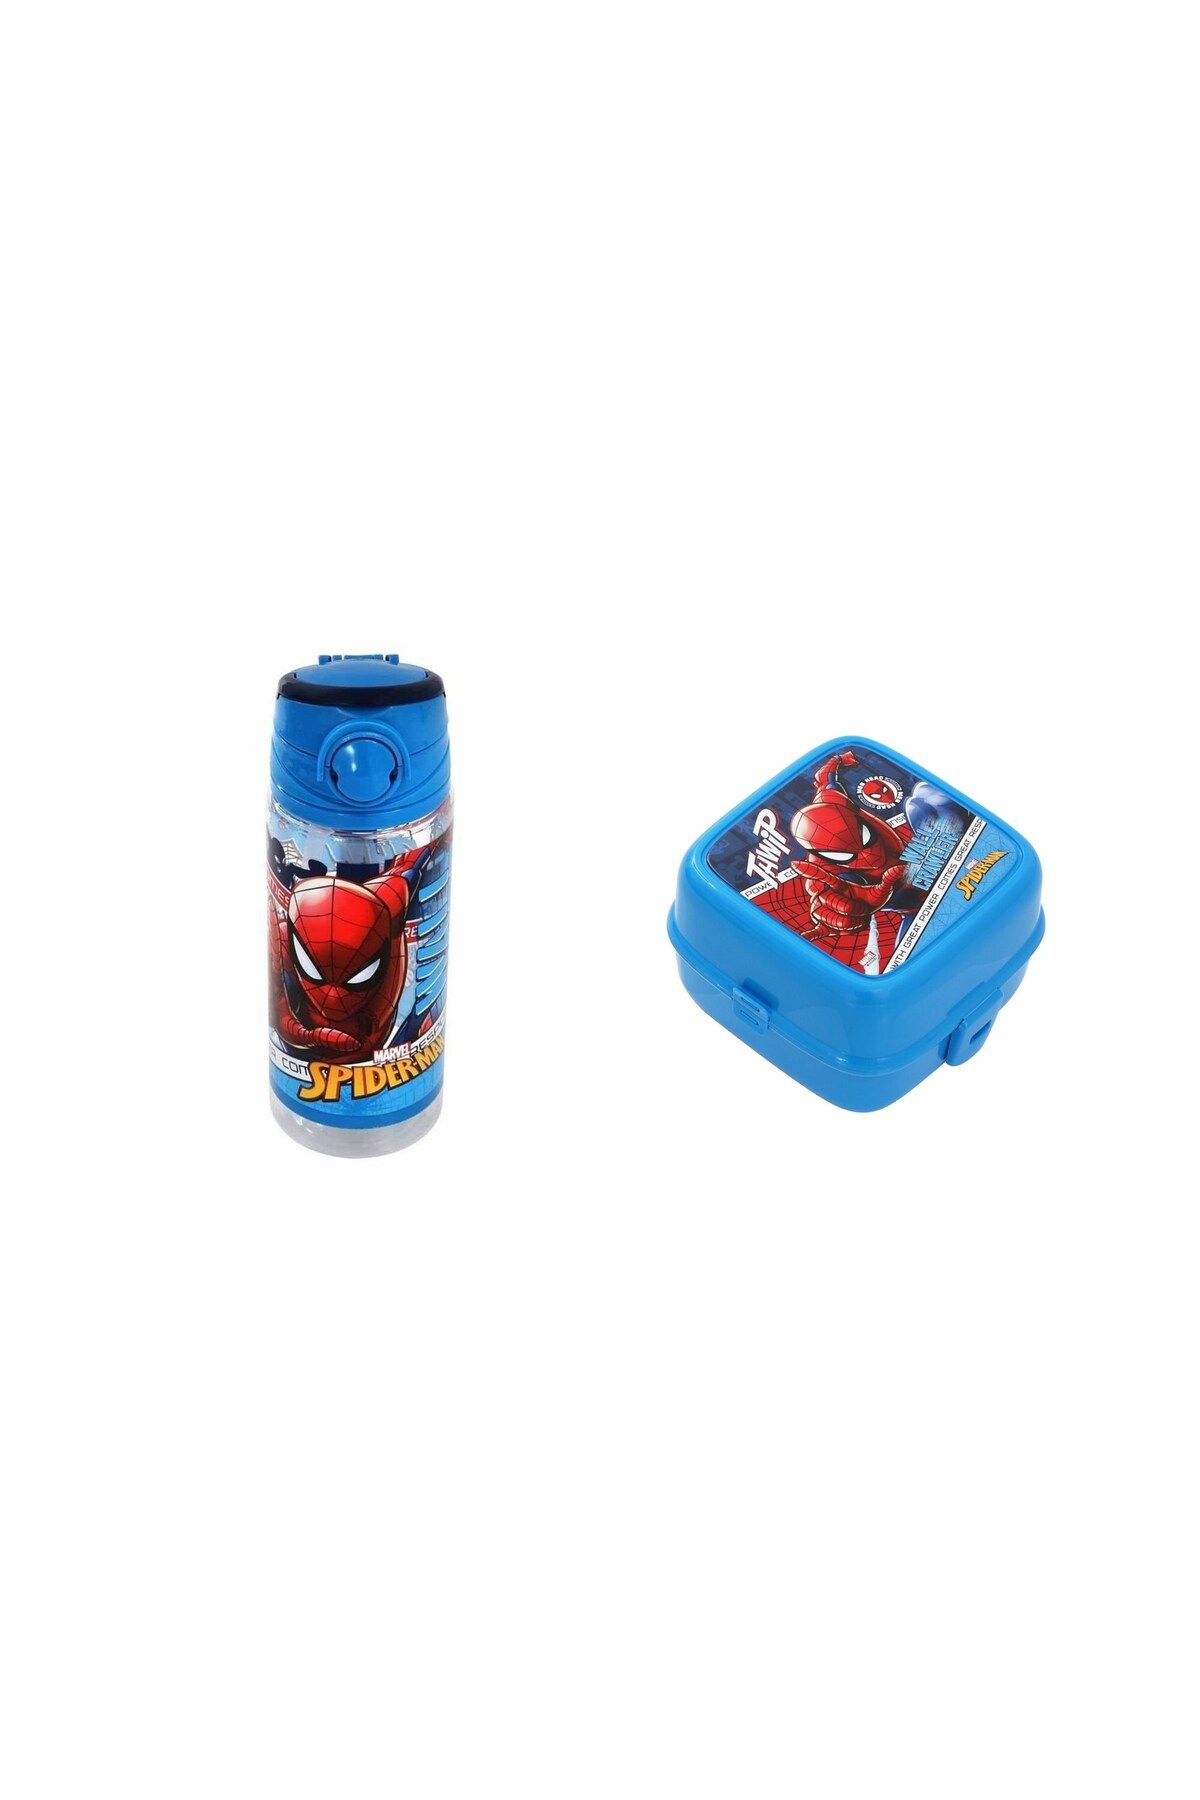 Spiderman -Örümcek Adam Matara 500 ml ve Beslenme Kabı